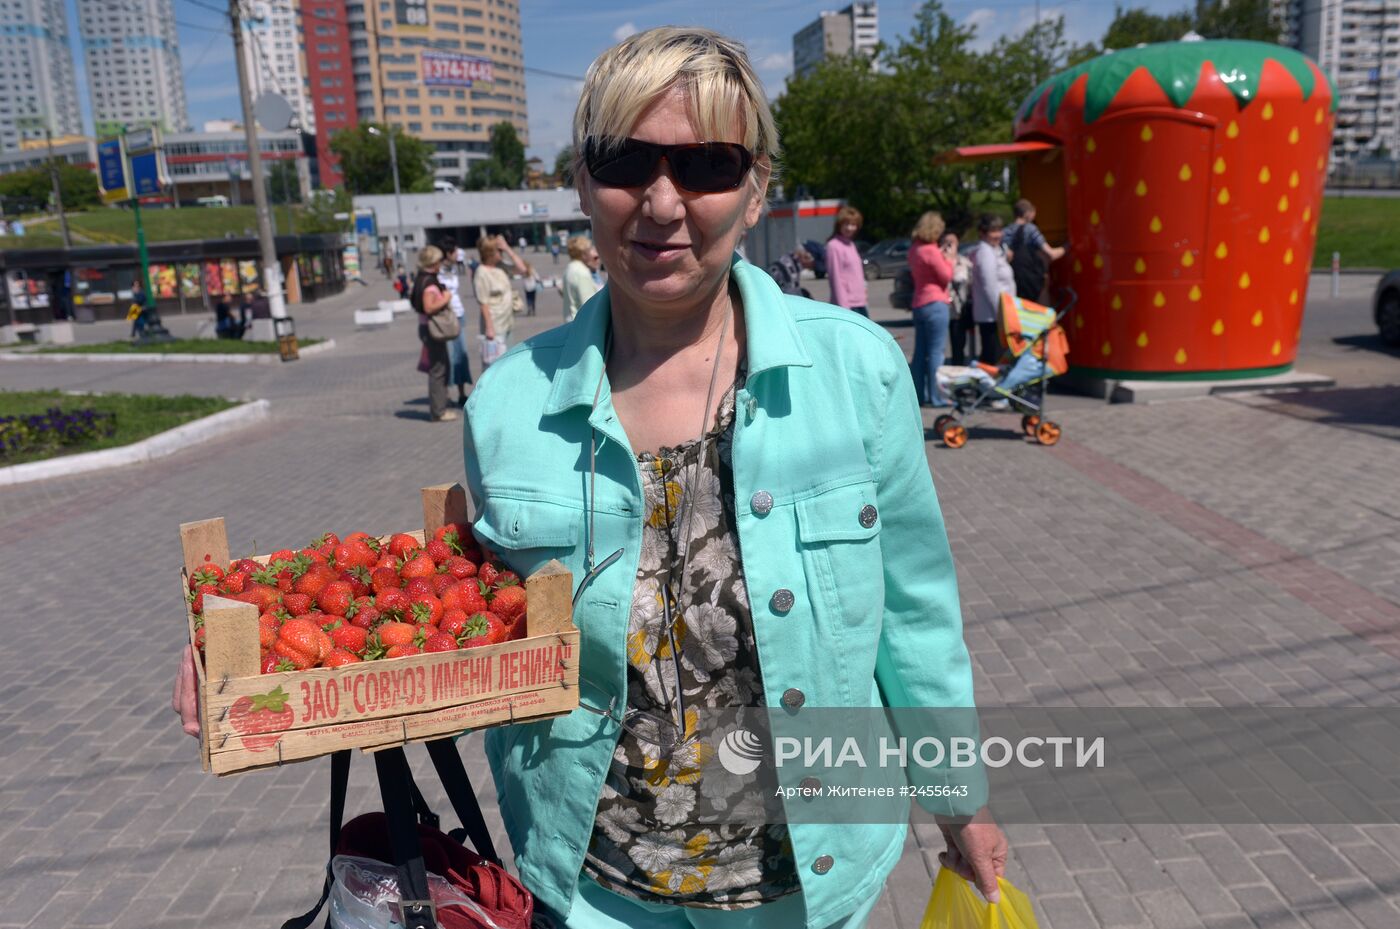 Продажа клубники возле станции метро "Чертановская" в Москве